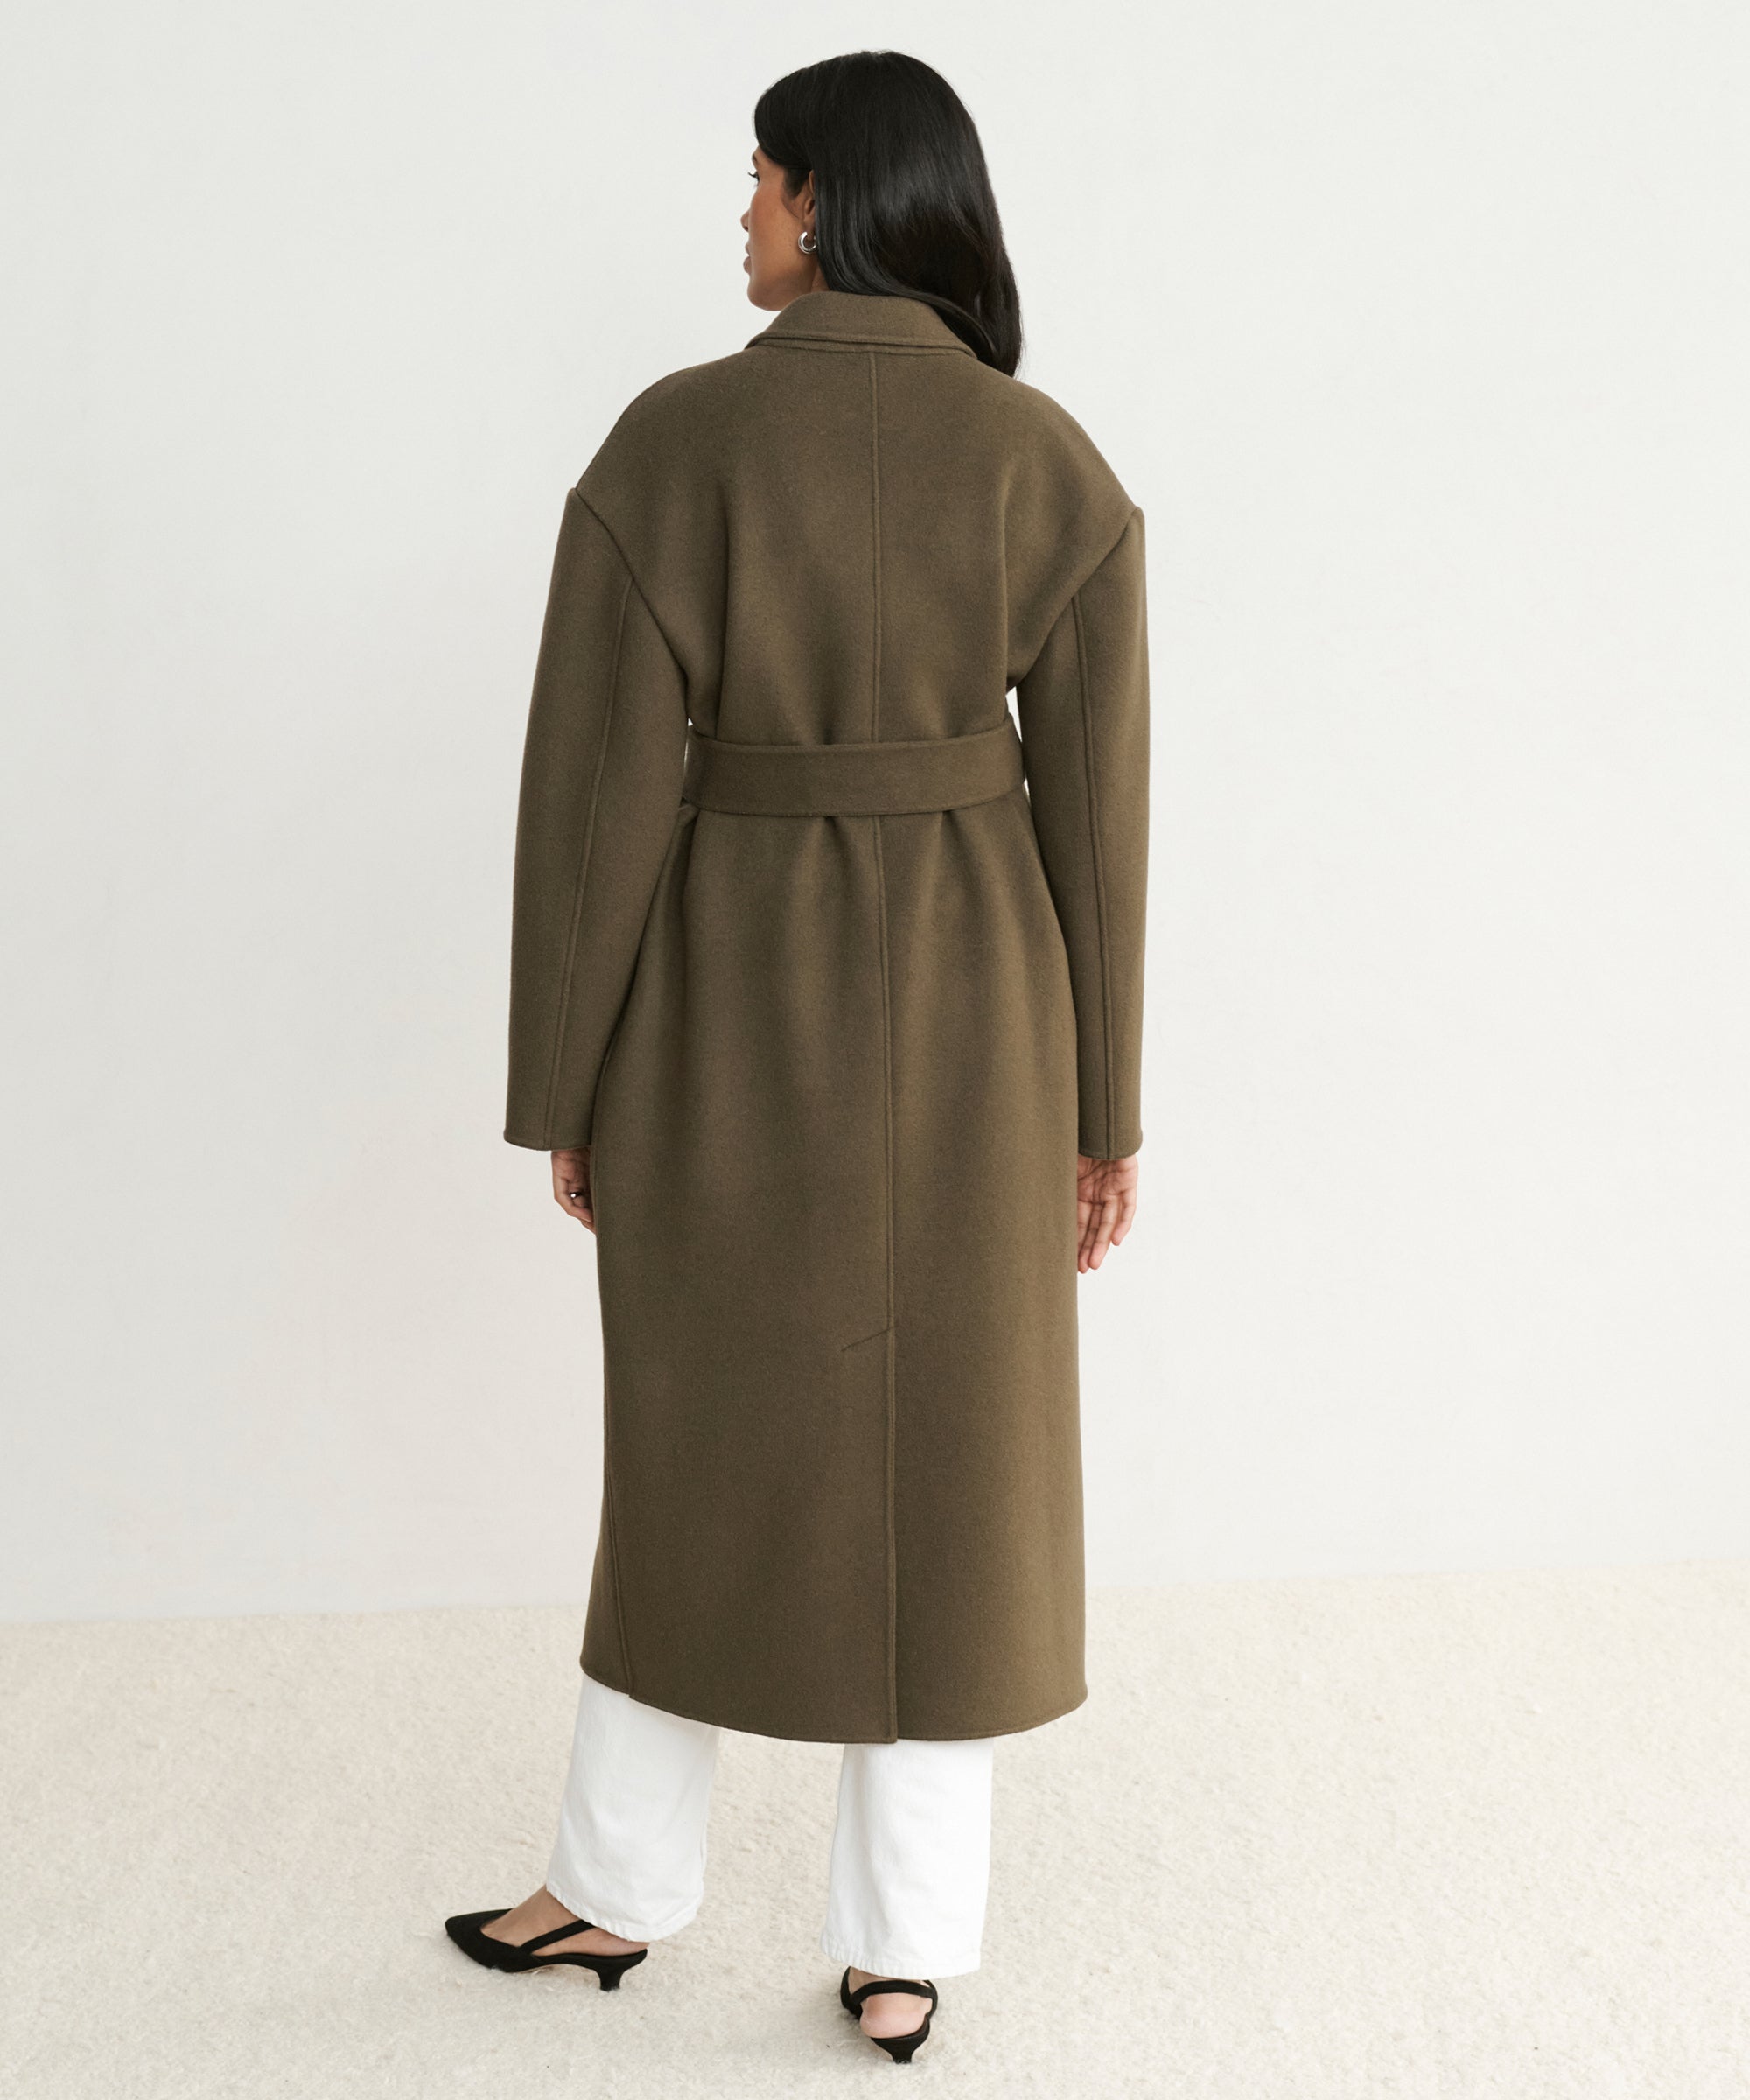 Jenni Kayne Women's Wool Cashmere Coat Size X-Small